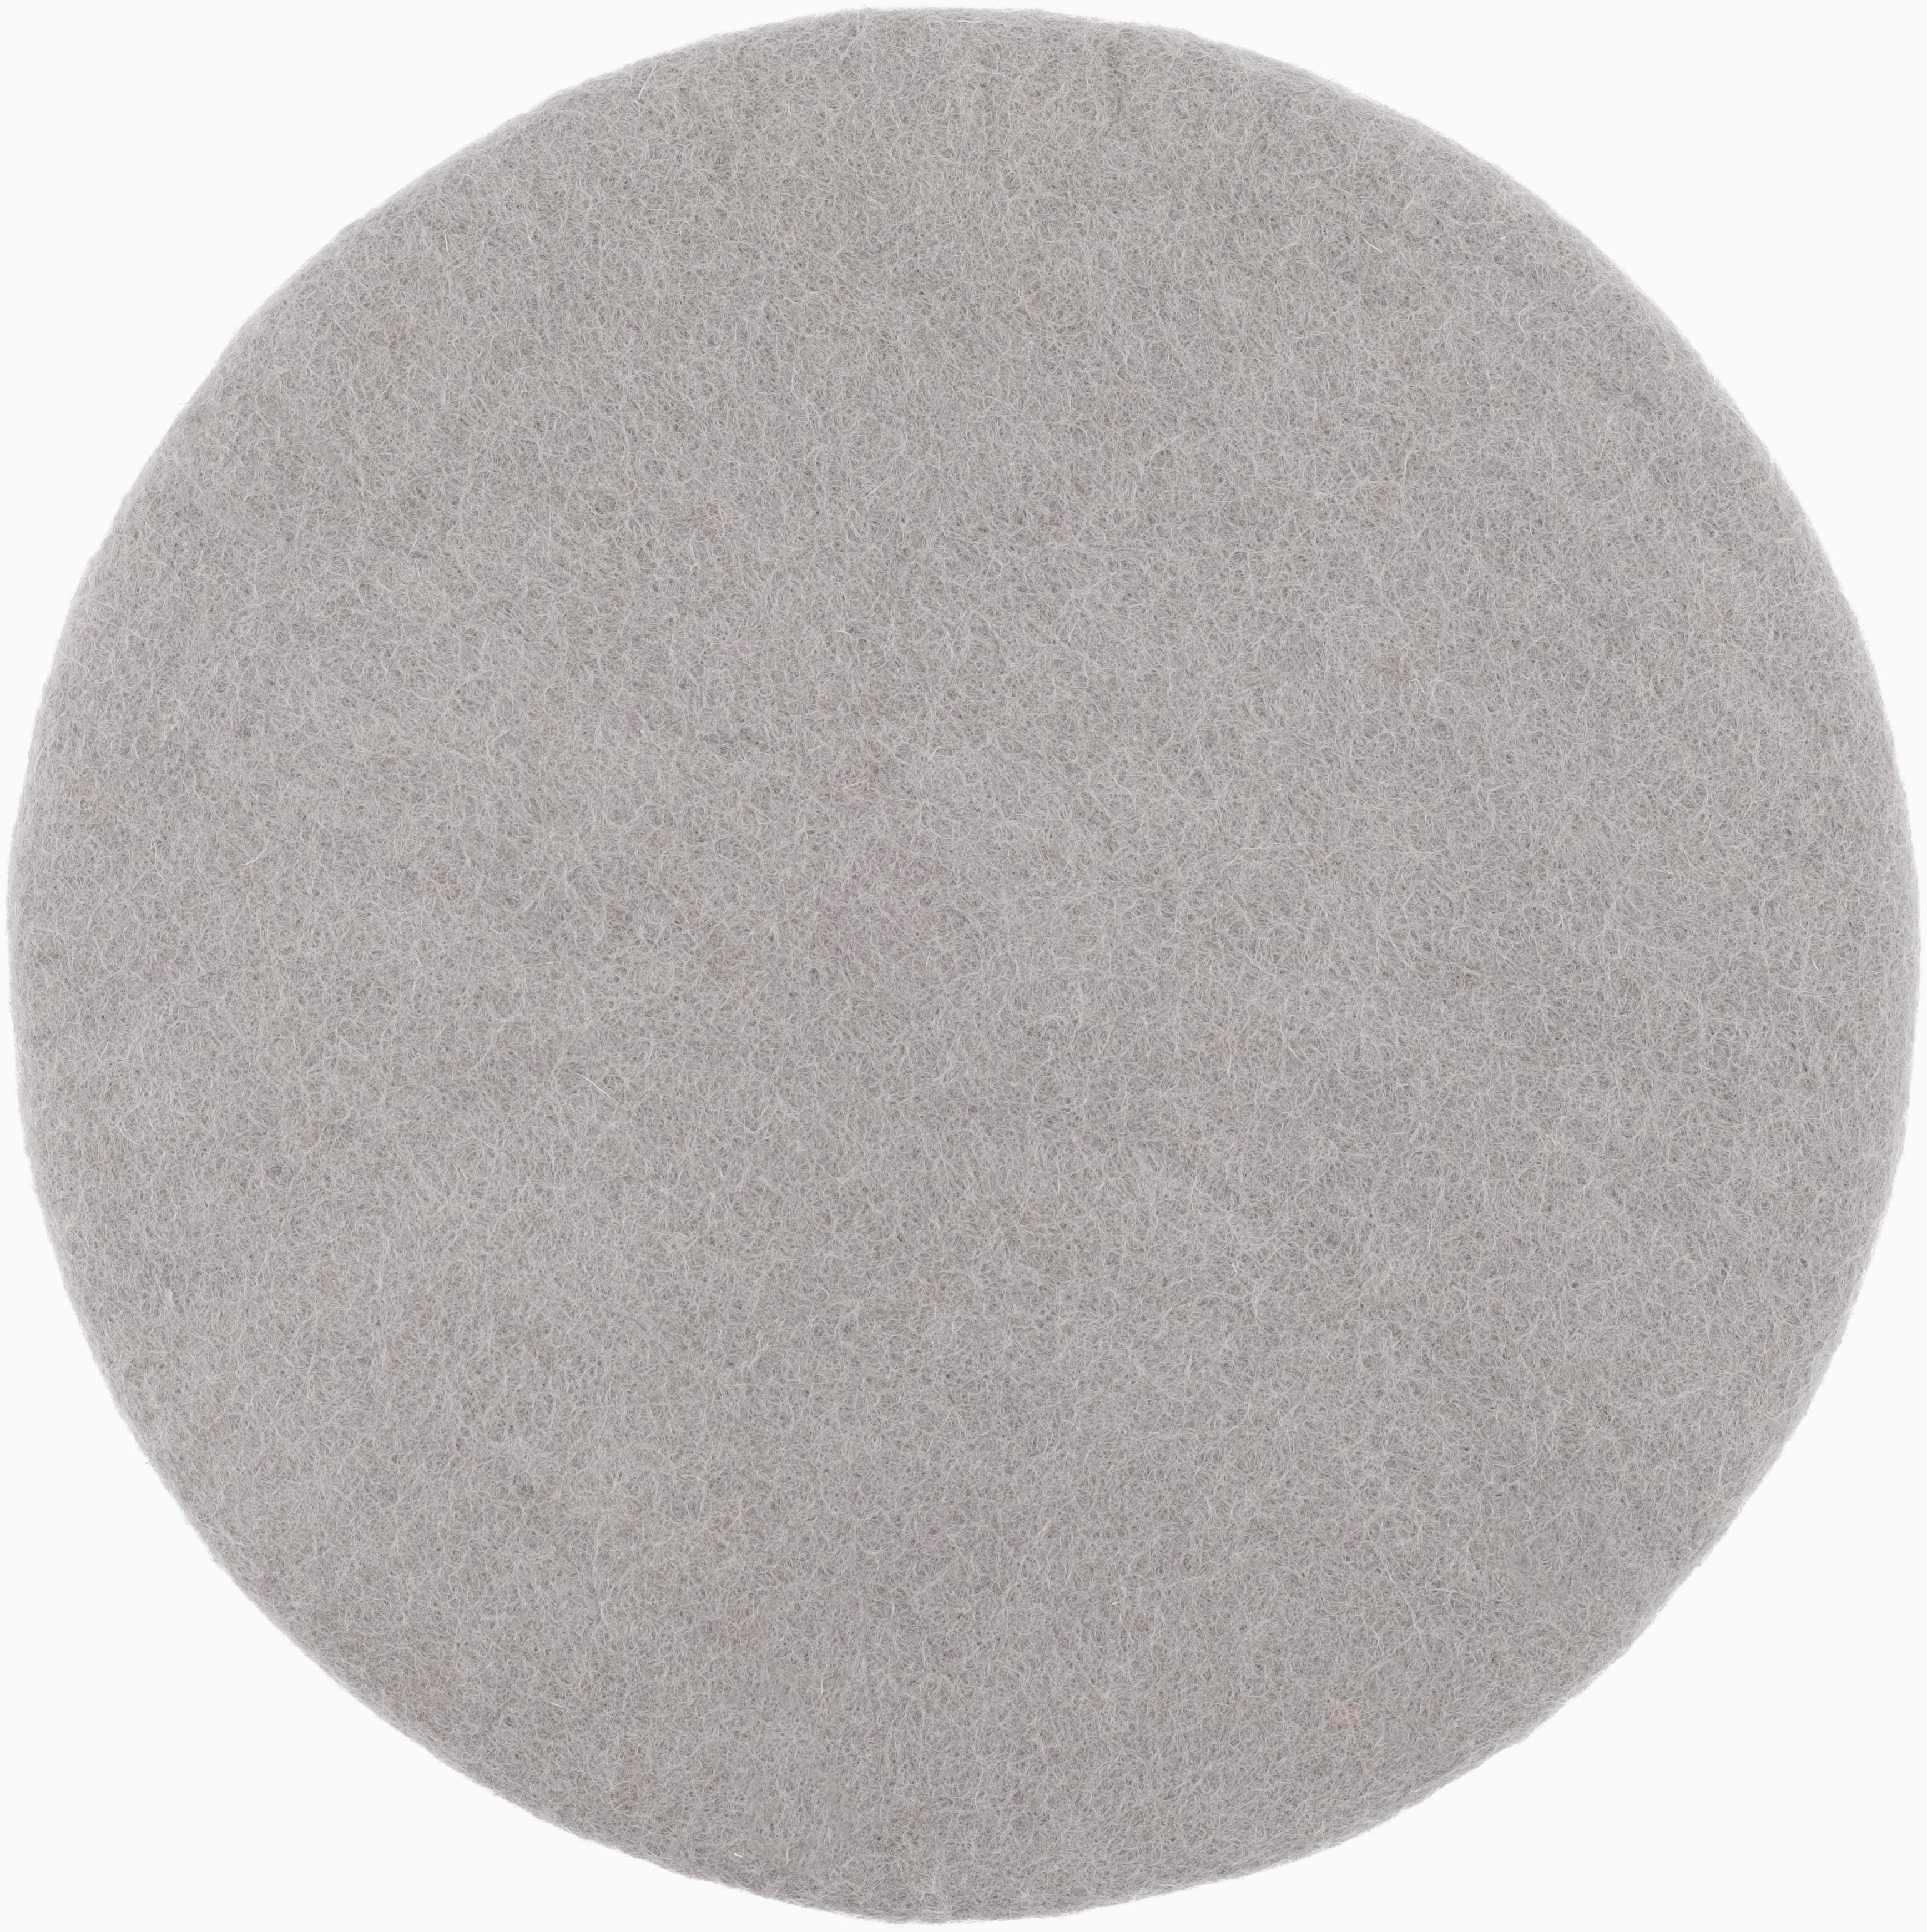 myfelt Stuhlkissen Filz Sitzauflage ⌀ 36 cm, 100% reiner Schurwolle, rund, schmutzabweisend Luis